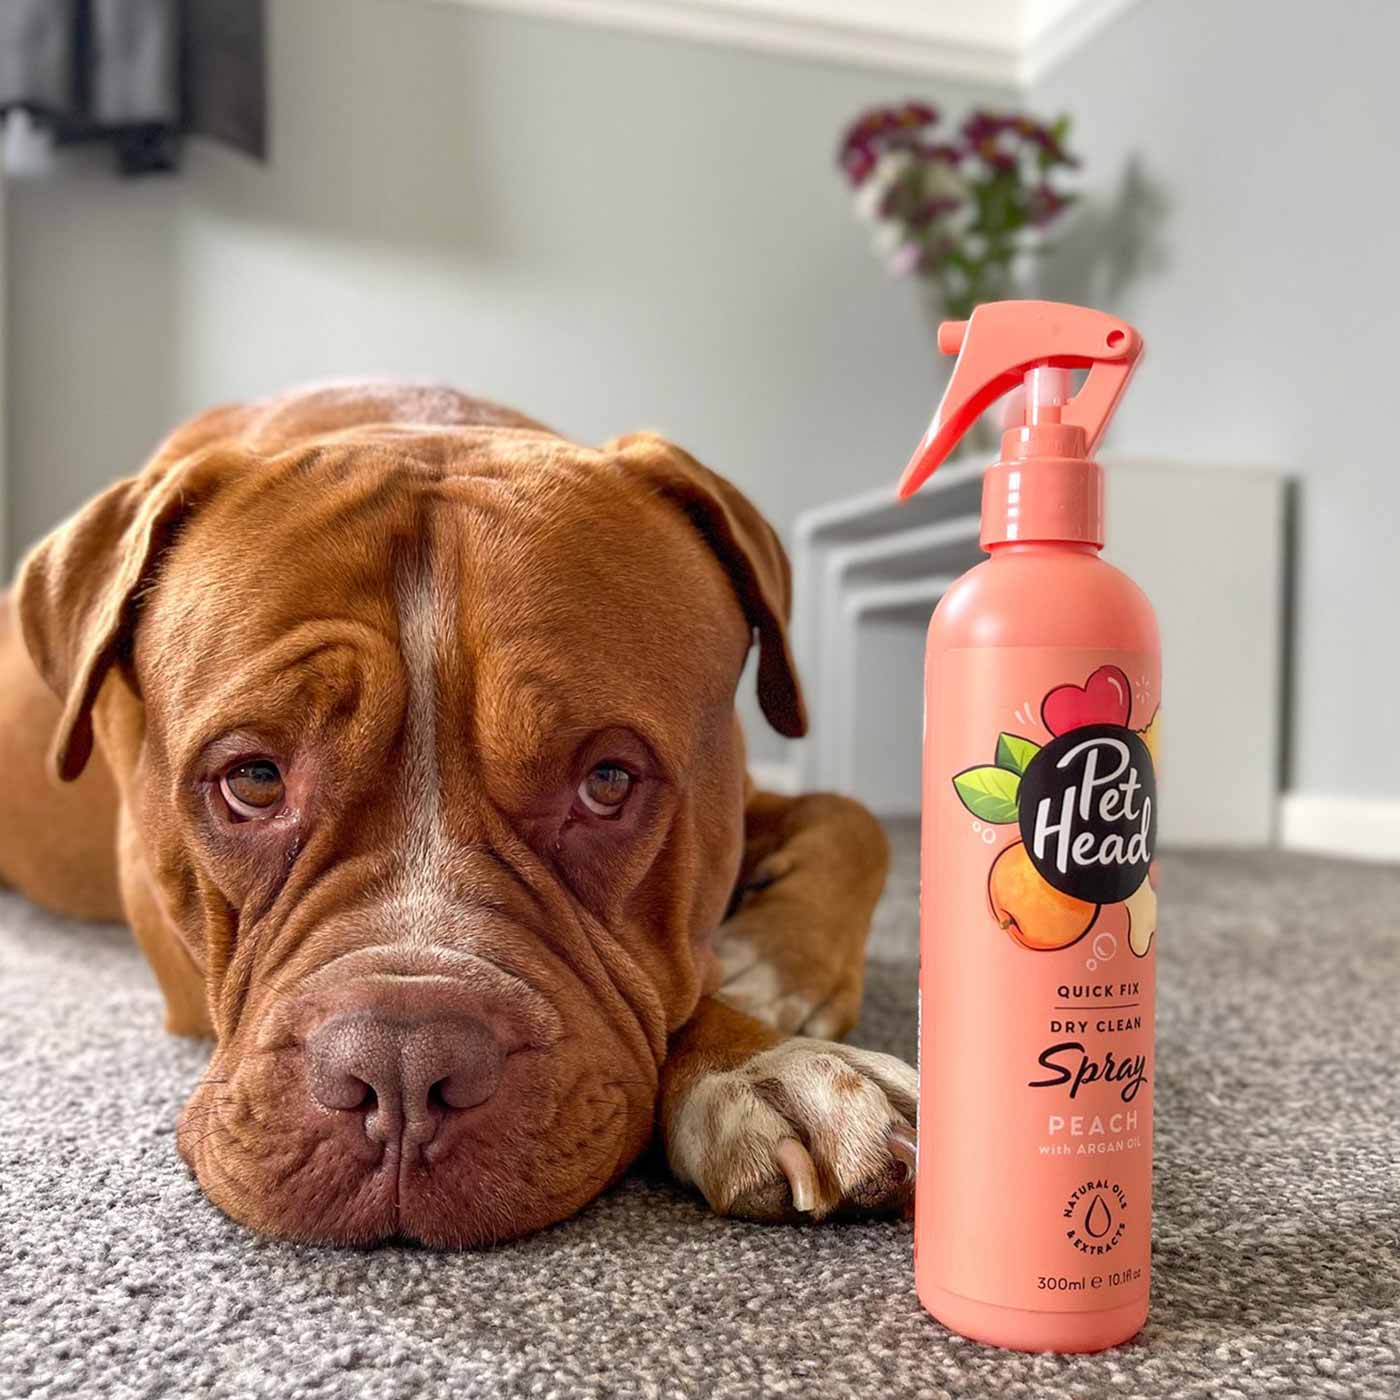 Pet Head Quick Fix Dry Clean Peach Spray